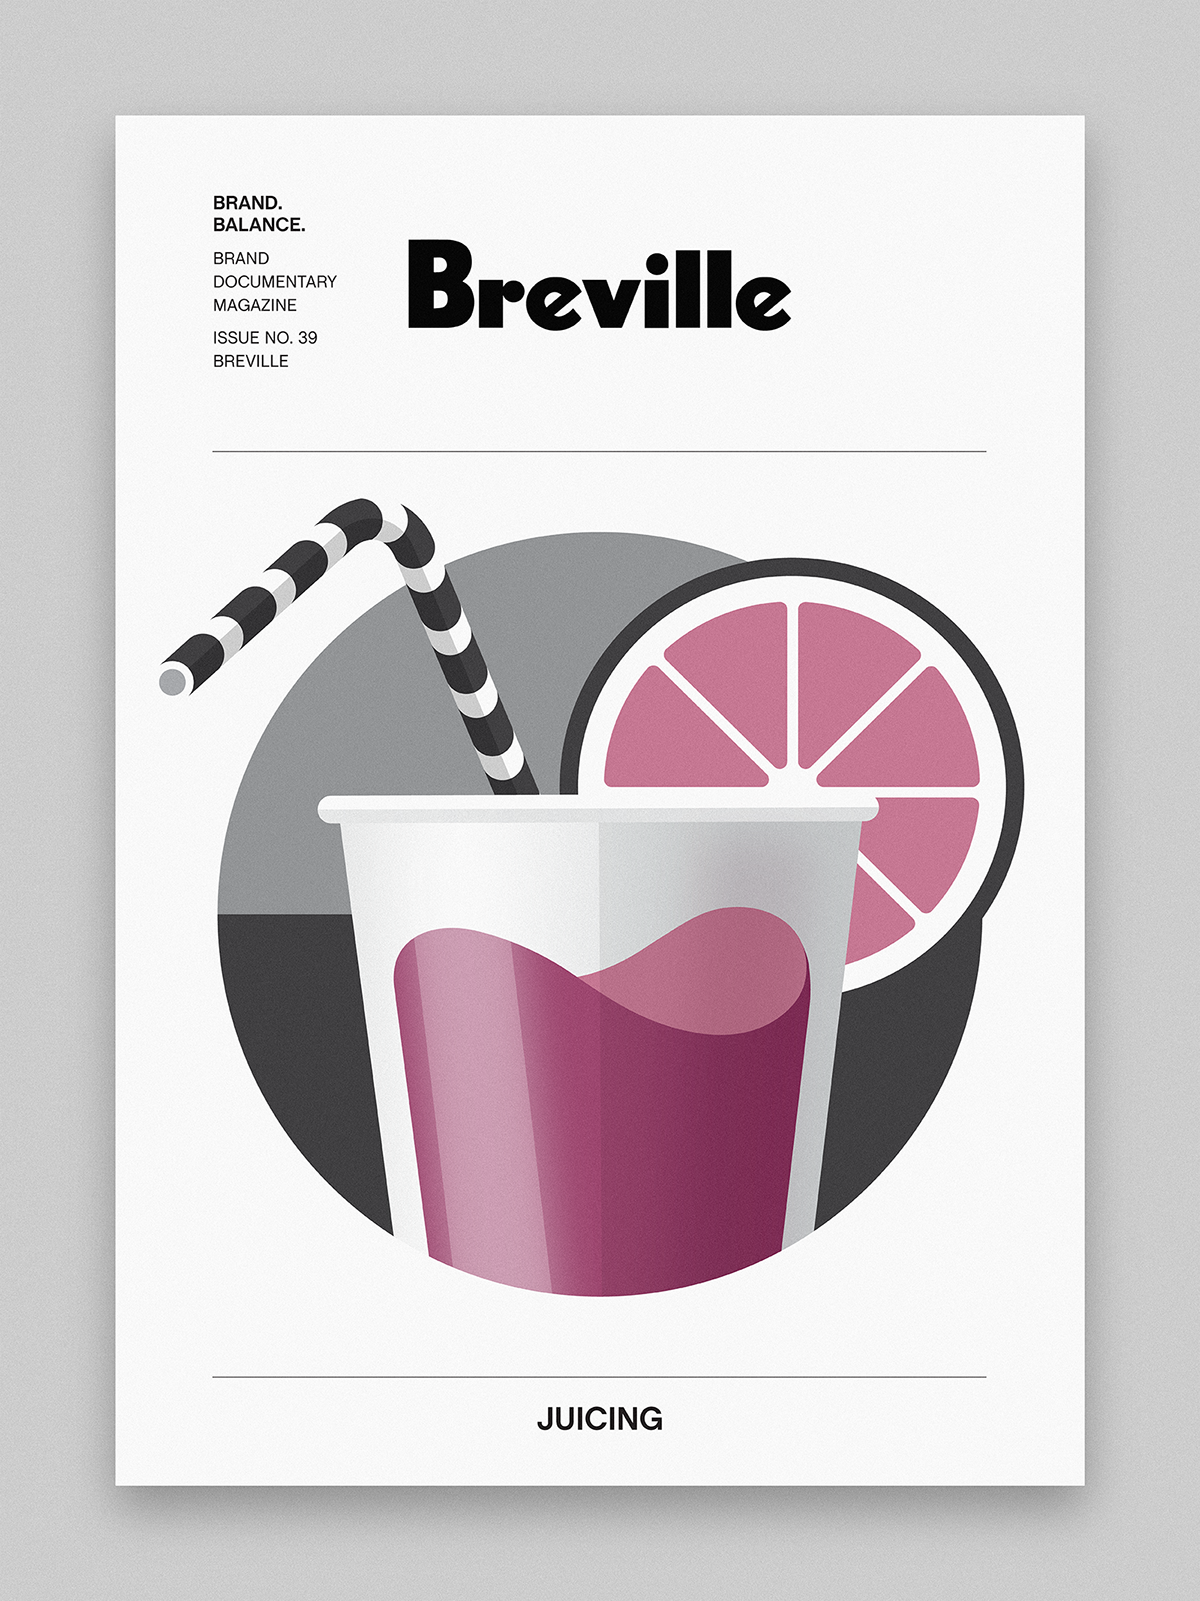 Adobe Portfolio B magazine ILLUSTRATION  infographic Icon breville Coffee espresso